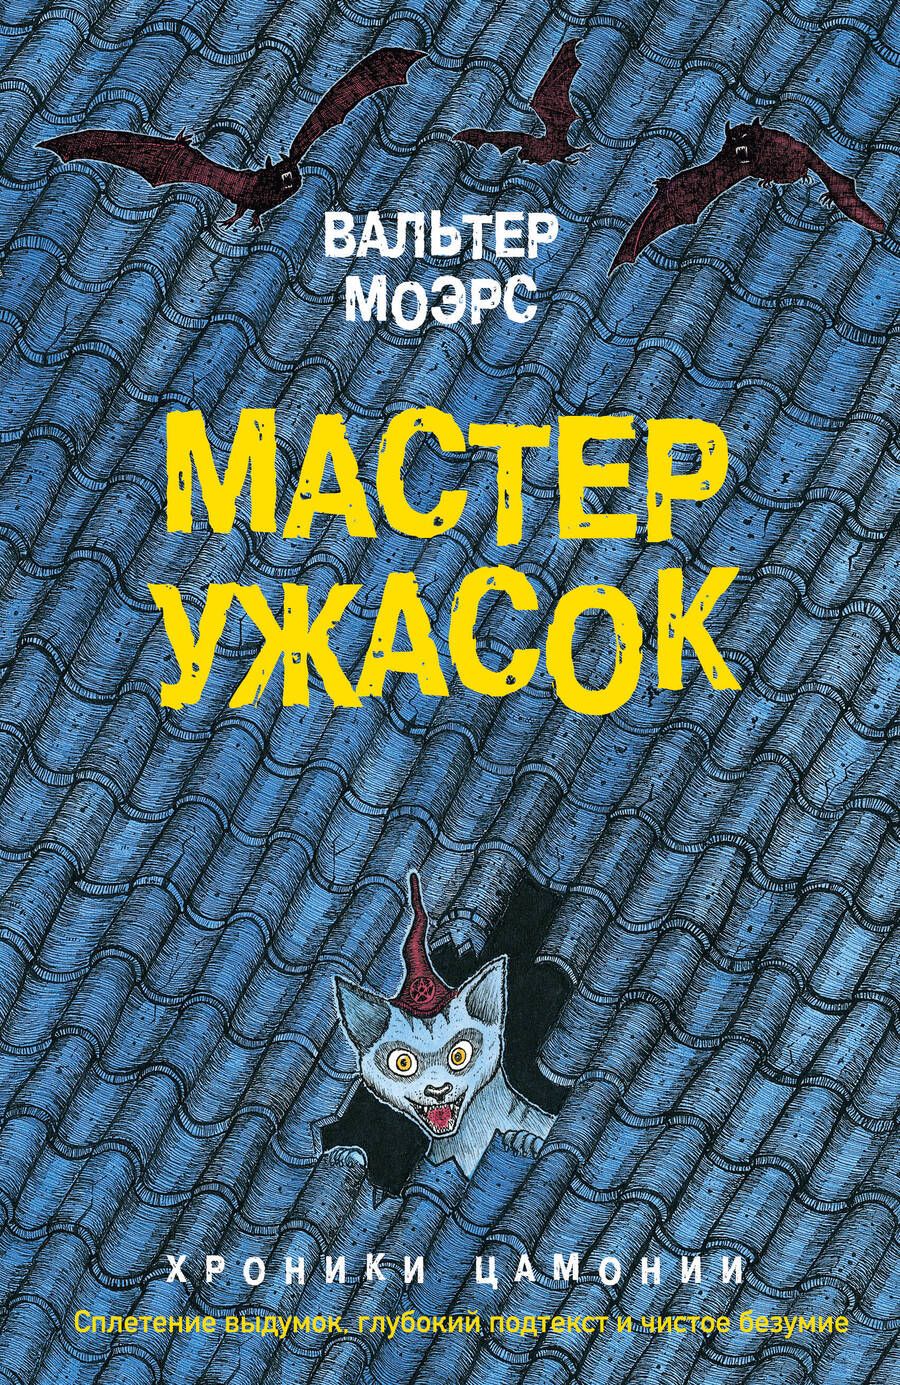 Обложка книги "Вальтер Моэрс: Мастер ужасок"